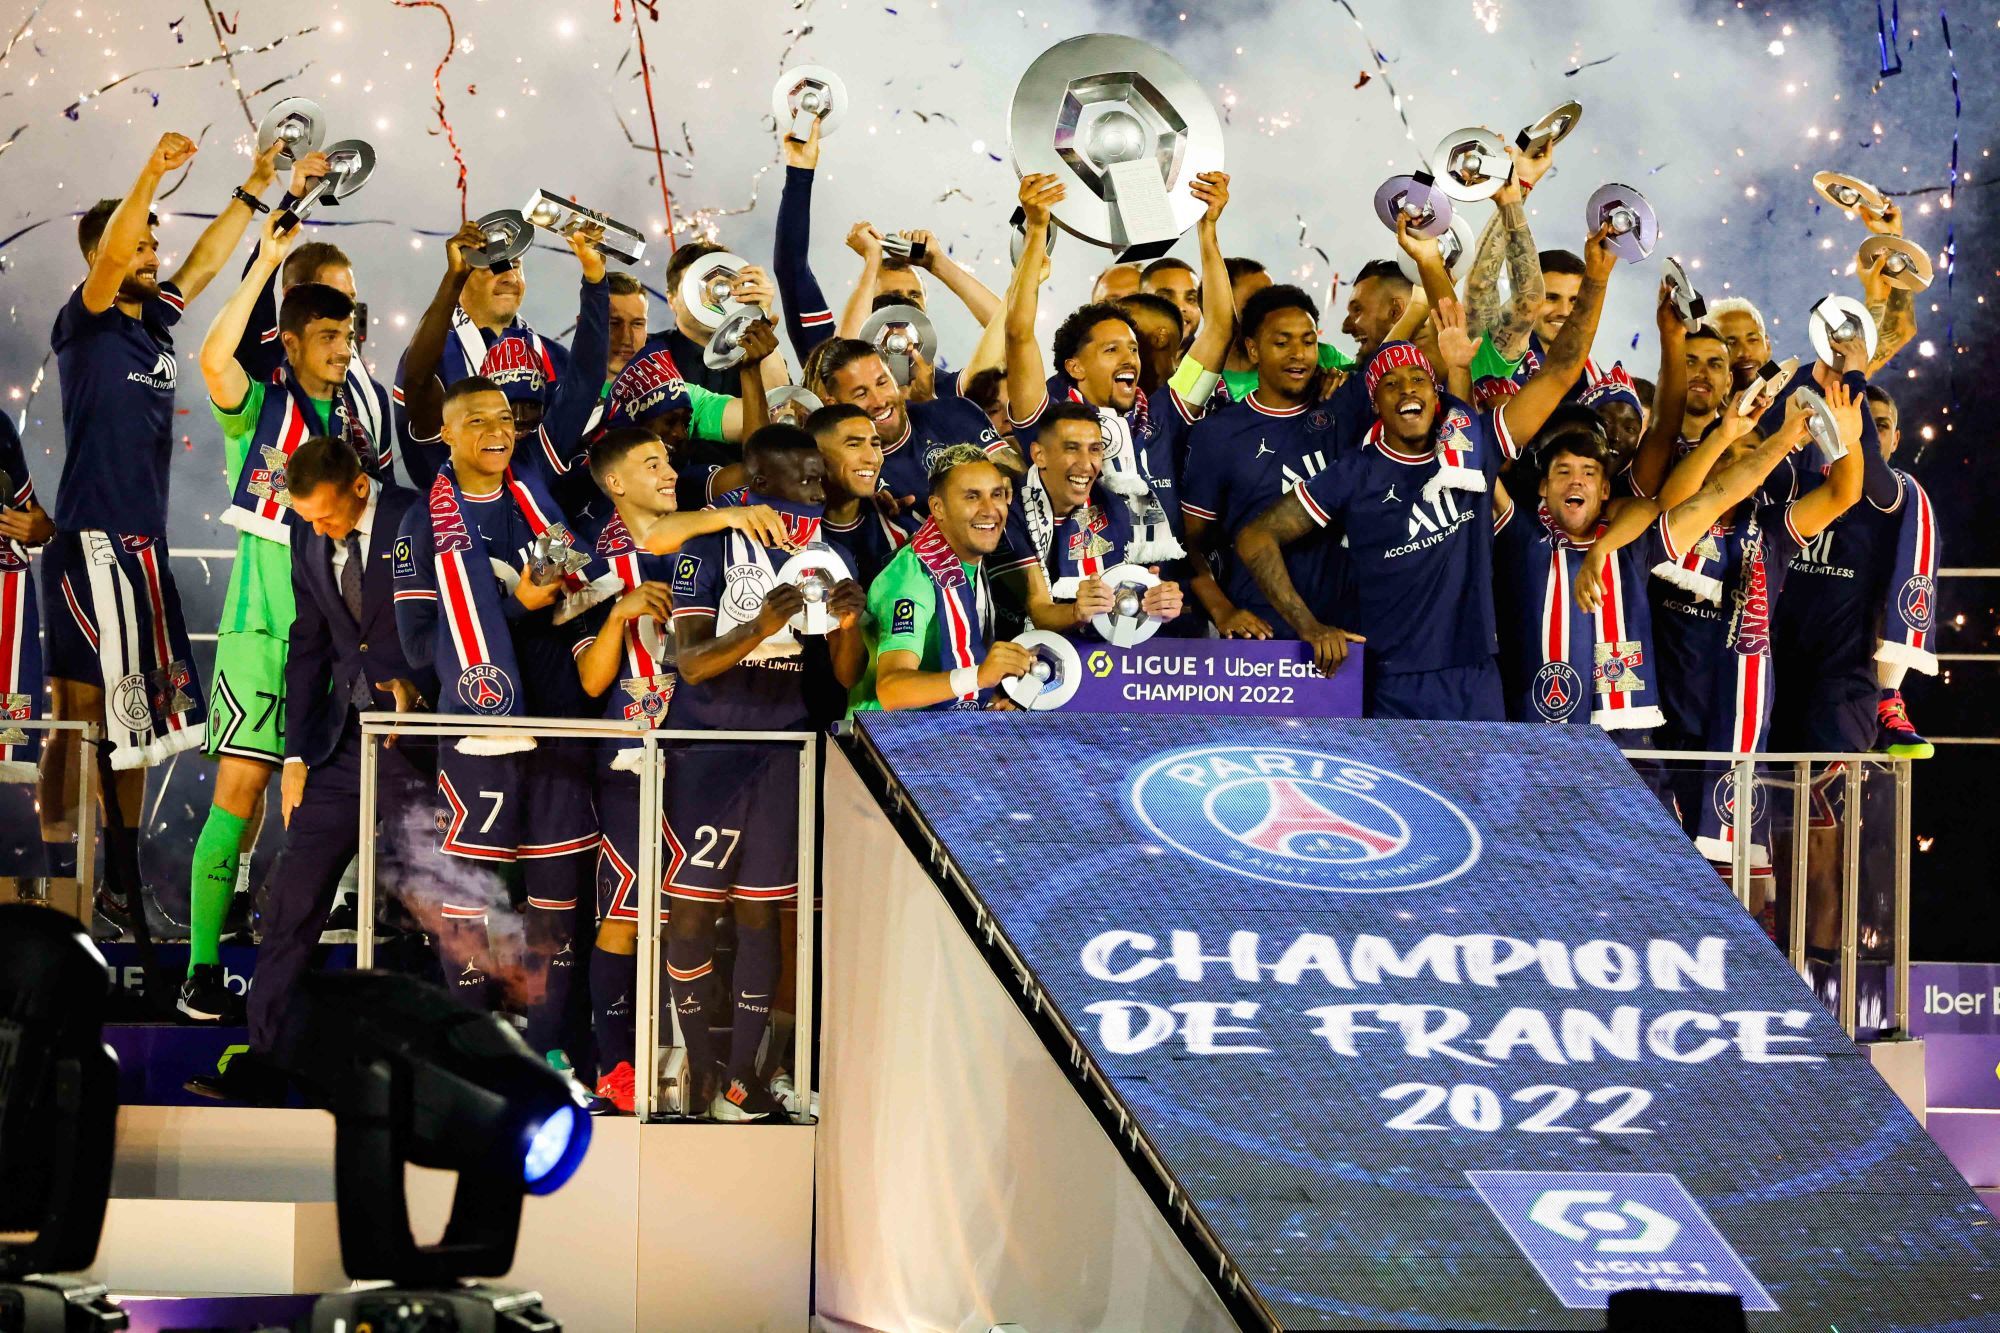 Officiel - Le calendrier complet du PSG en Ligue 1 2022-2023 !